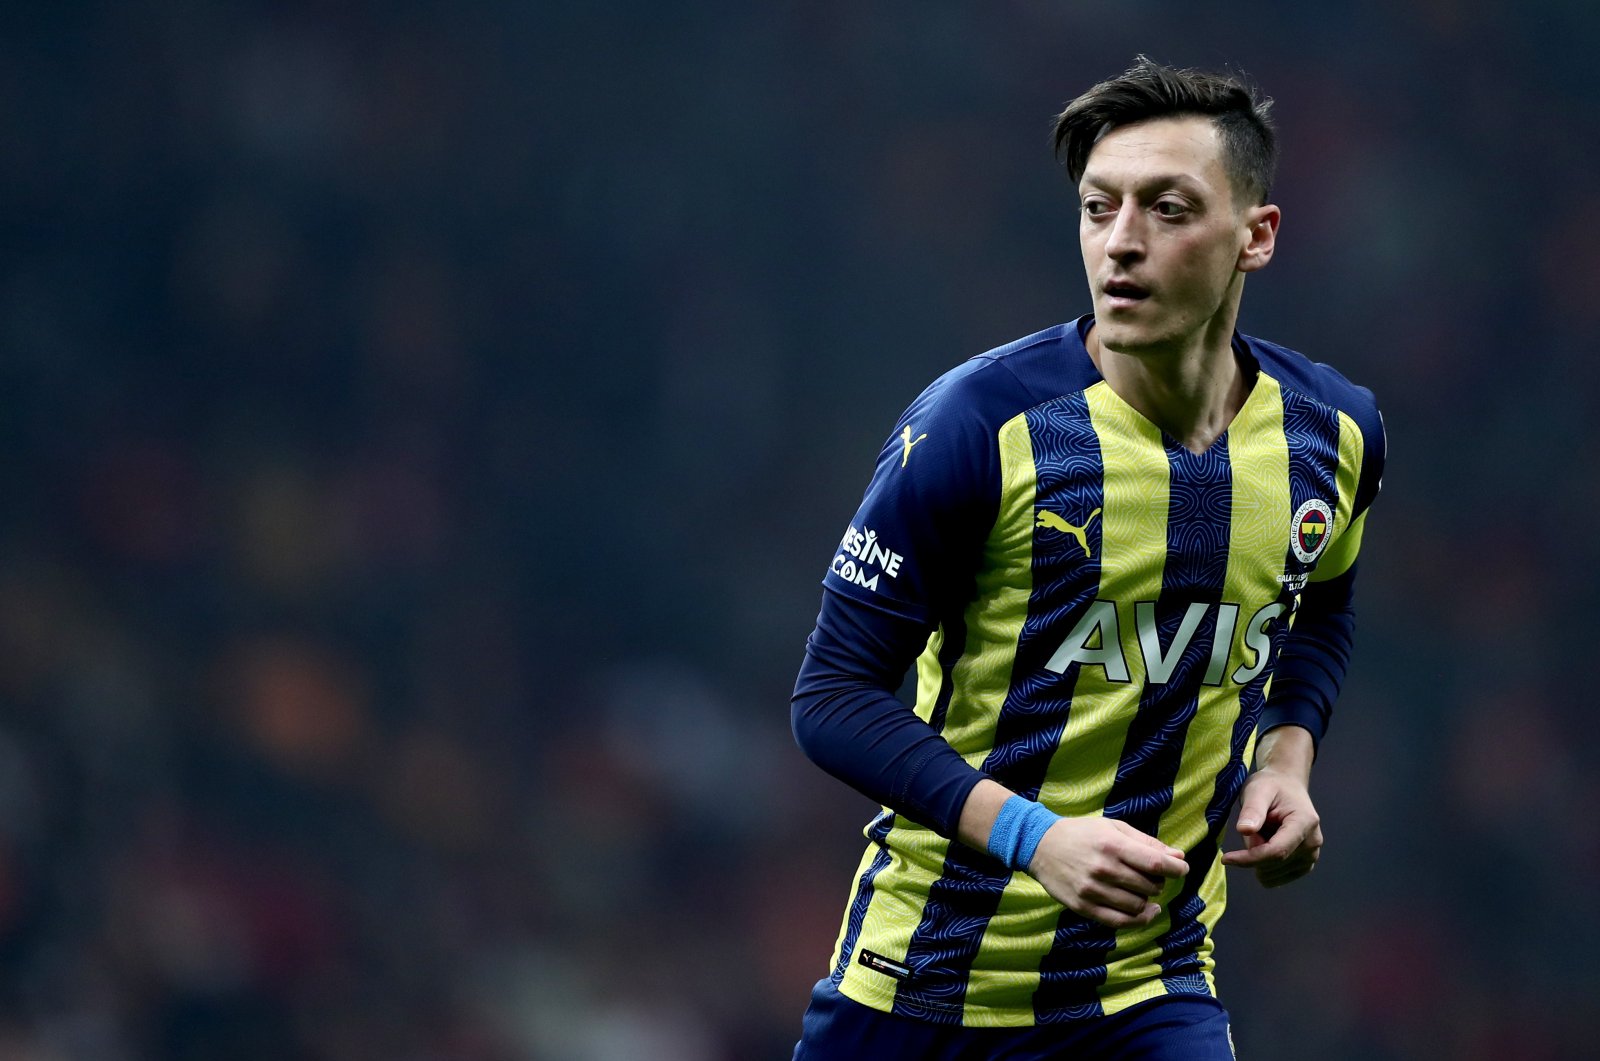 zil akan bergabung dengan tim Süper Lig Başakşehir setelah Fener keluar